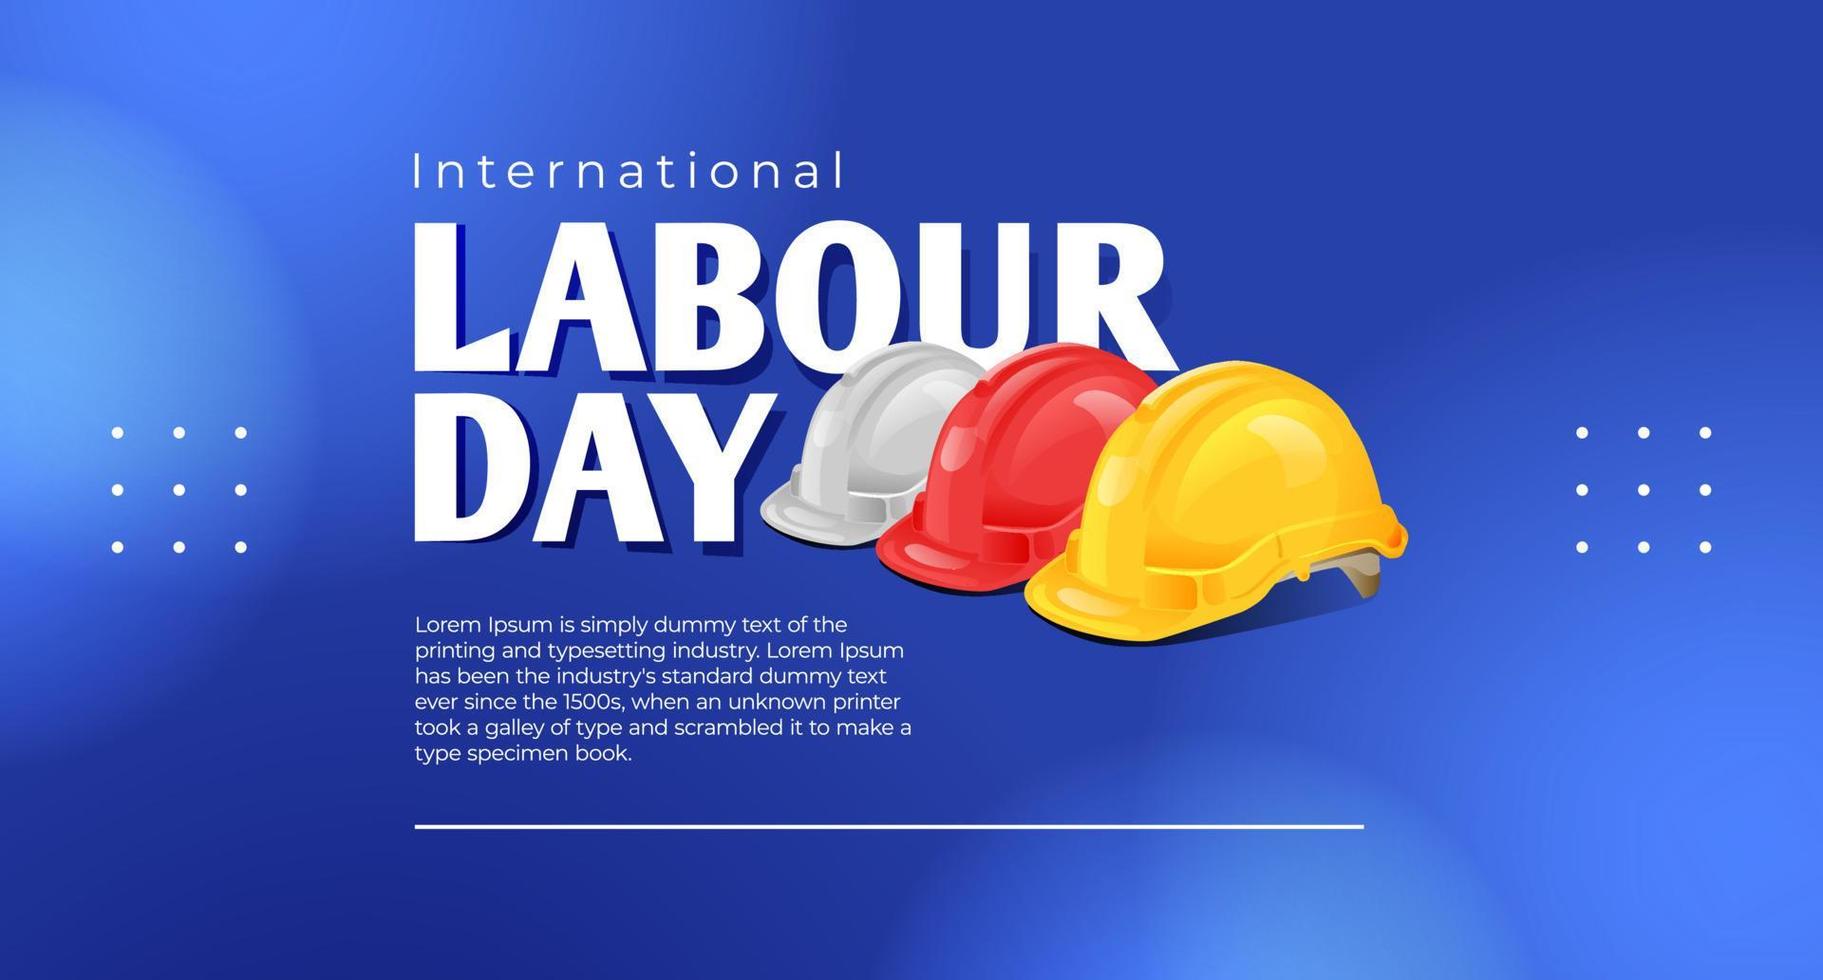 internacional trabalho dia pode 1 bandeira com segurança capacete ilustração conceito vetor